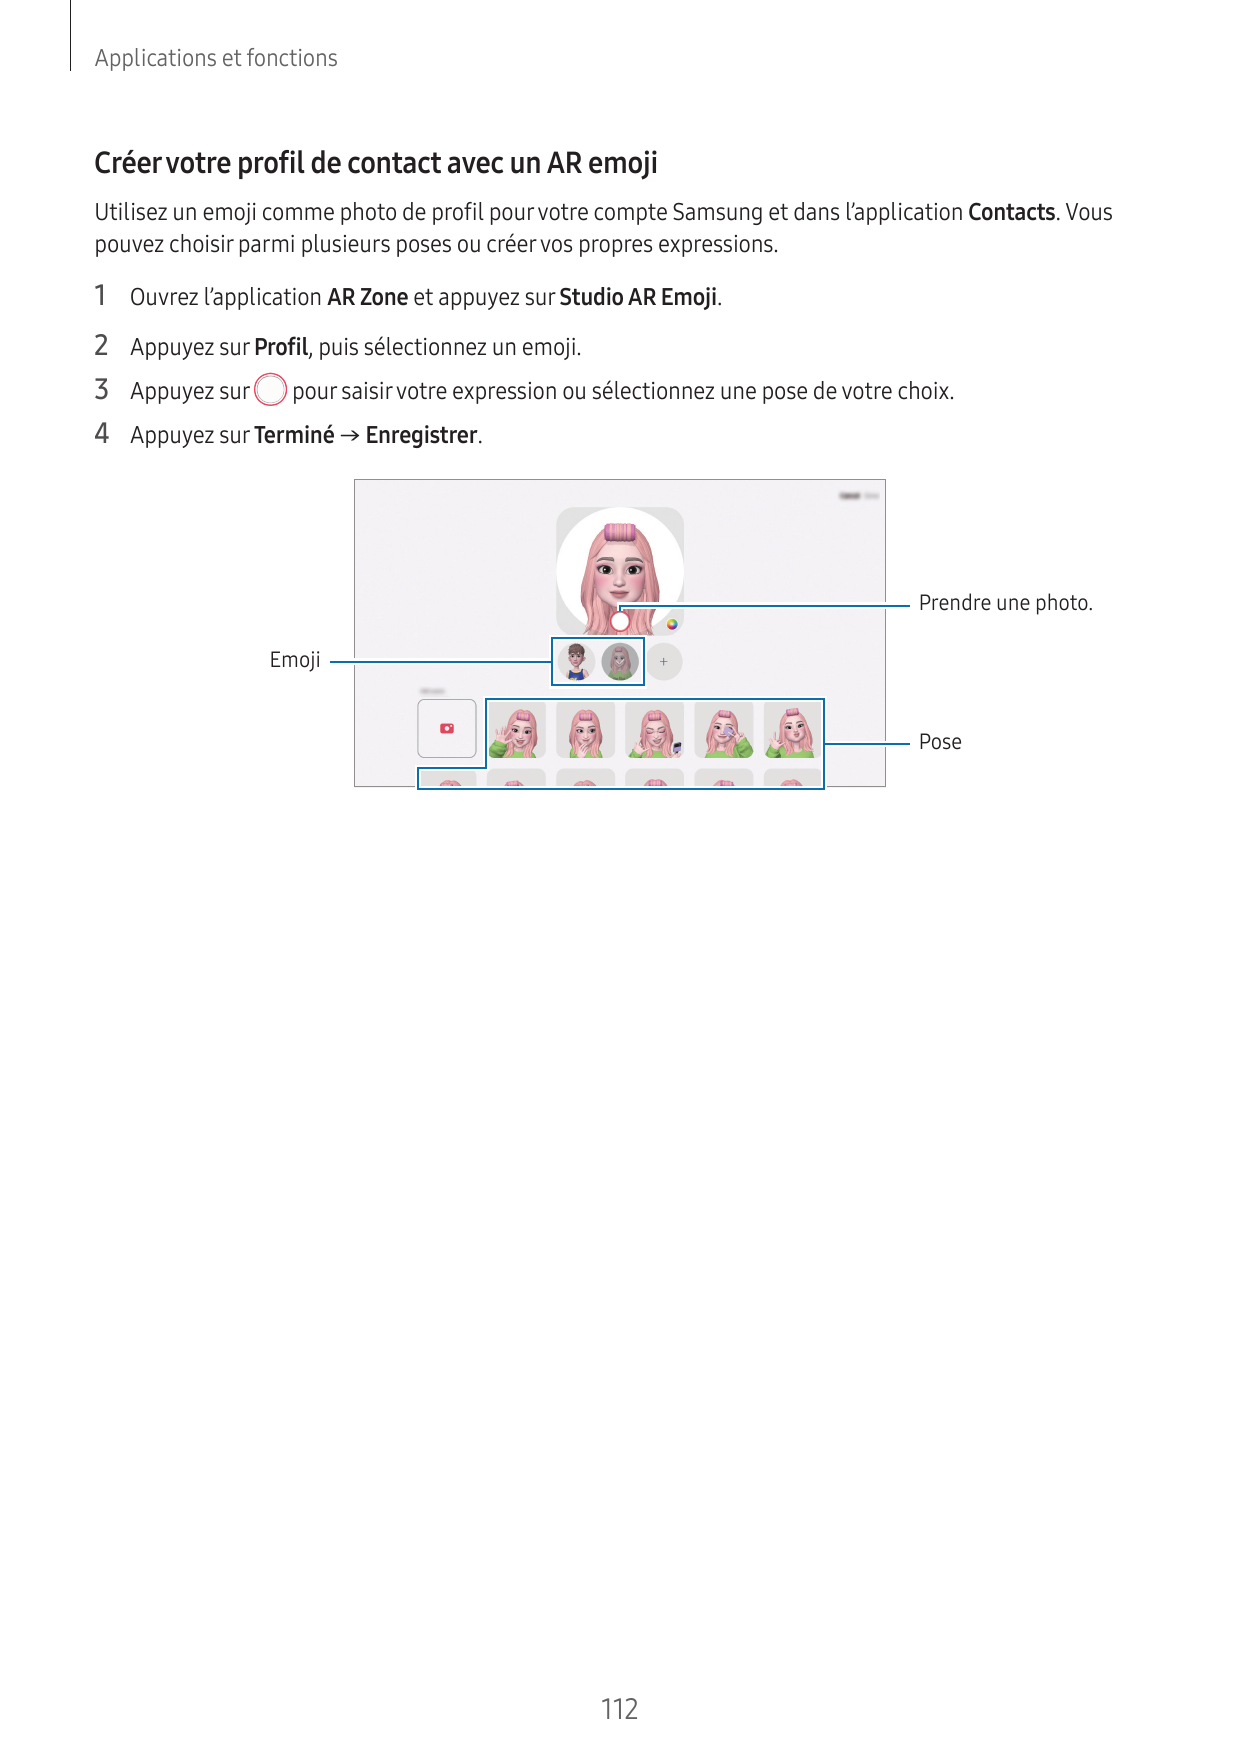 Applications et fonctionsCréer votre profil de contact avec un AR emojiUtilisez un emoji comme photo de profil pour votre compte